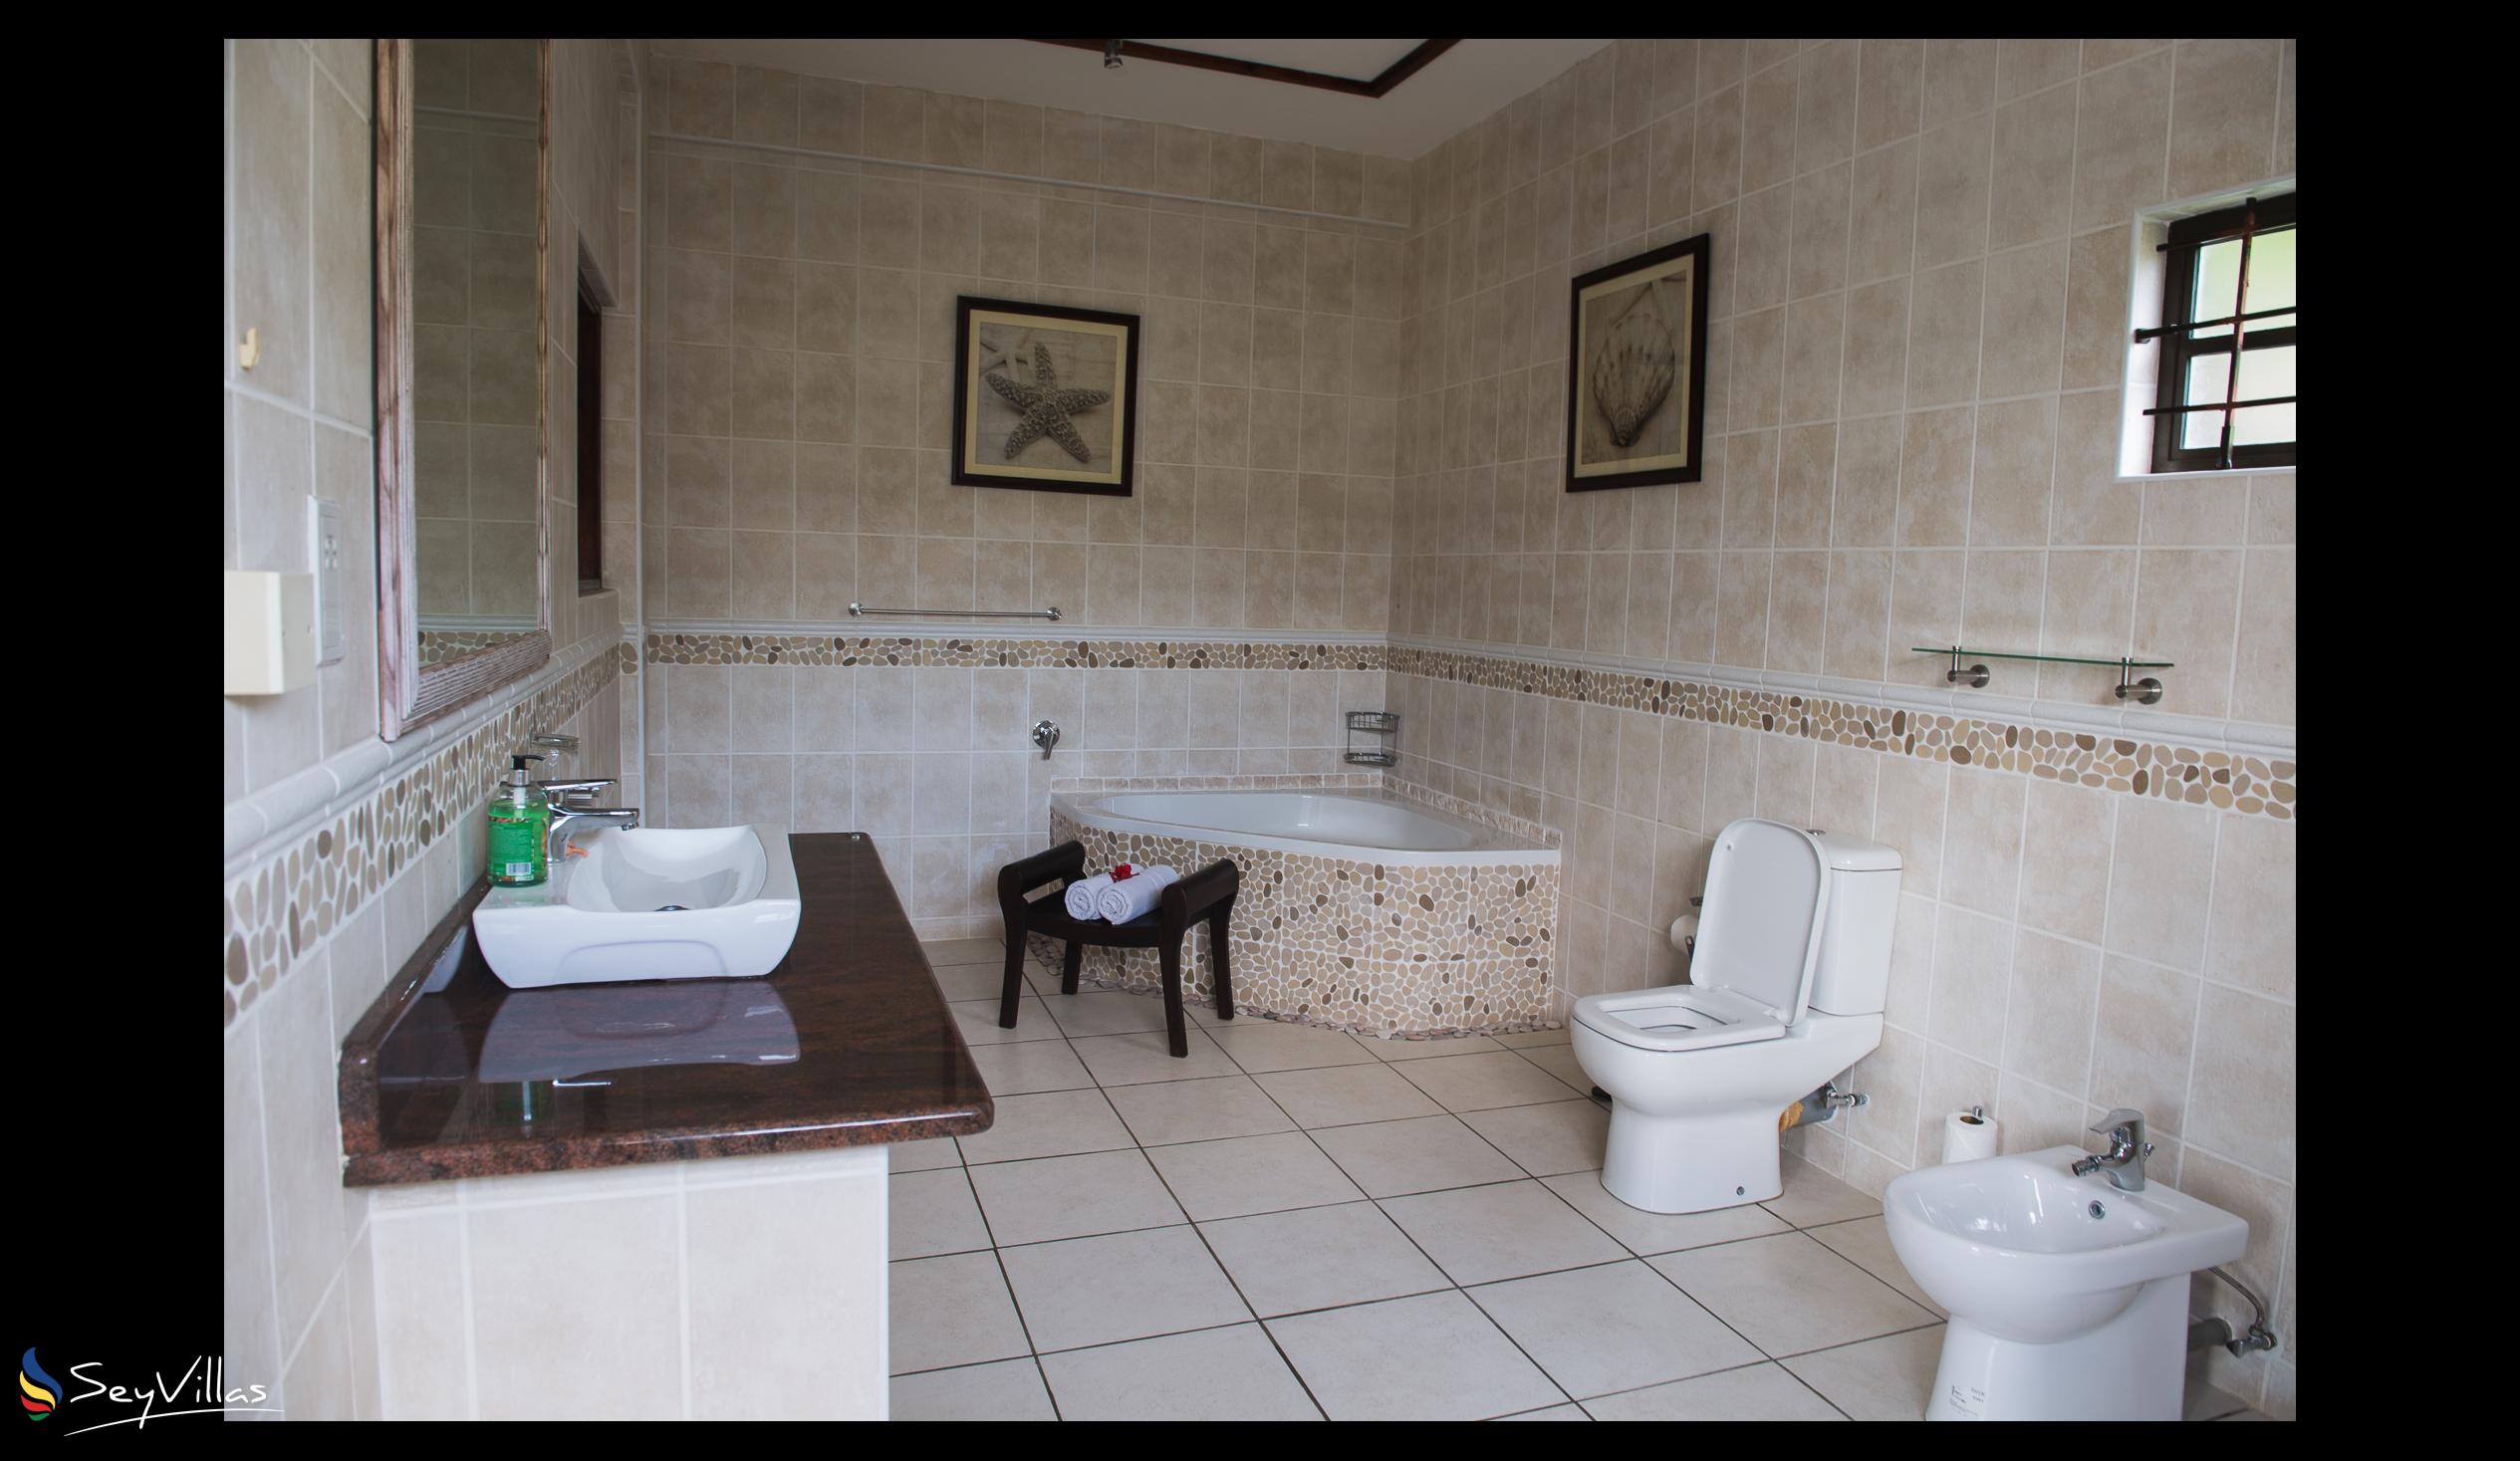 Photo 76: Chateau Saint Cloud - Superior Room - La Digue (Seychelles)